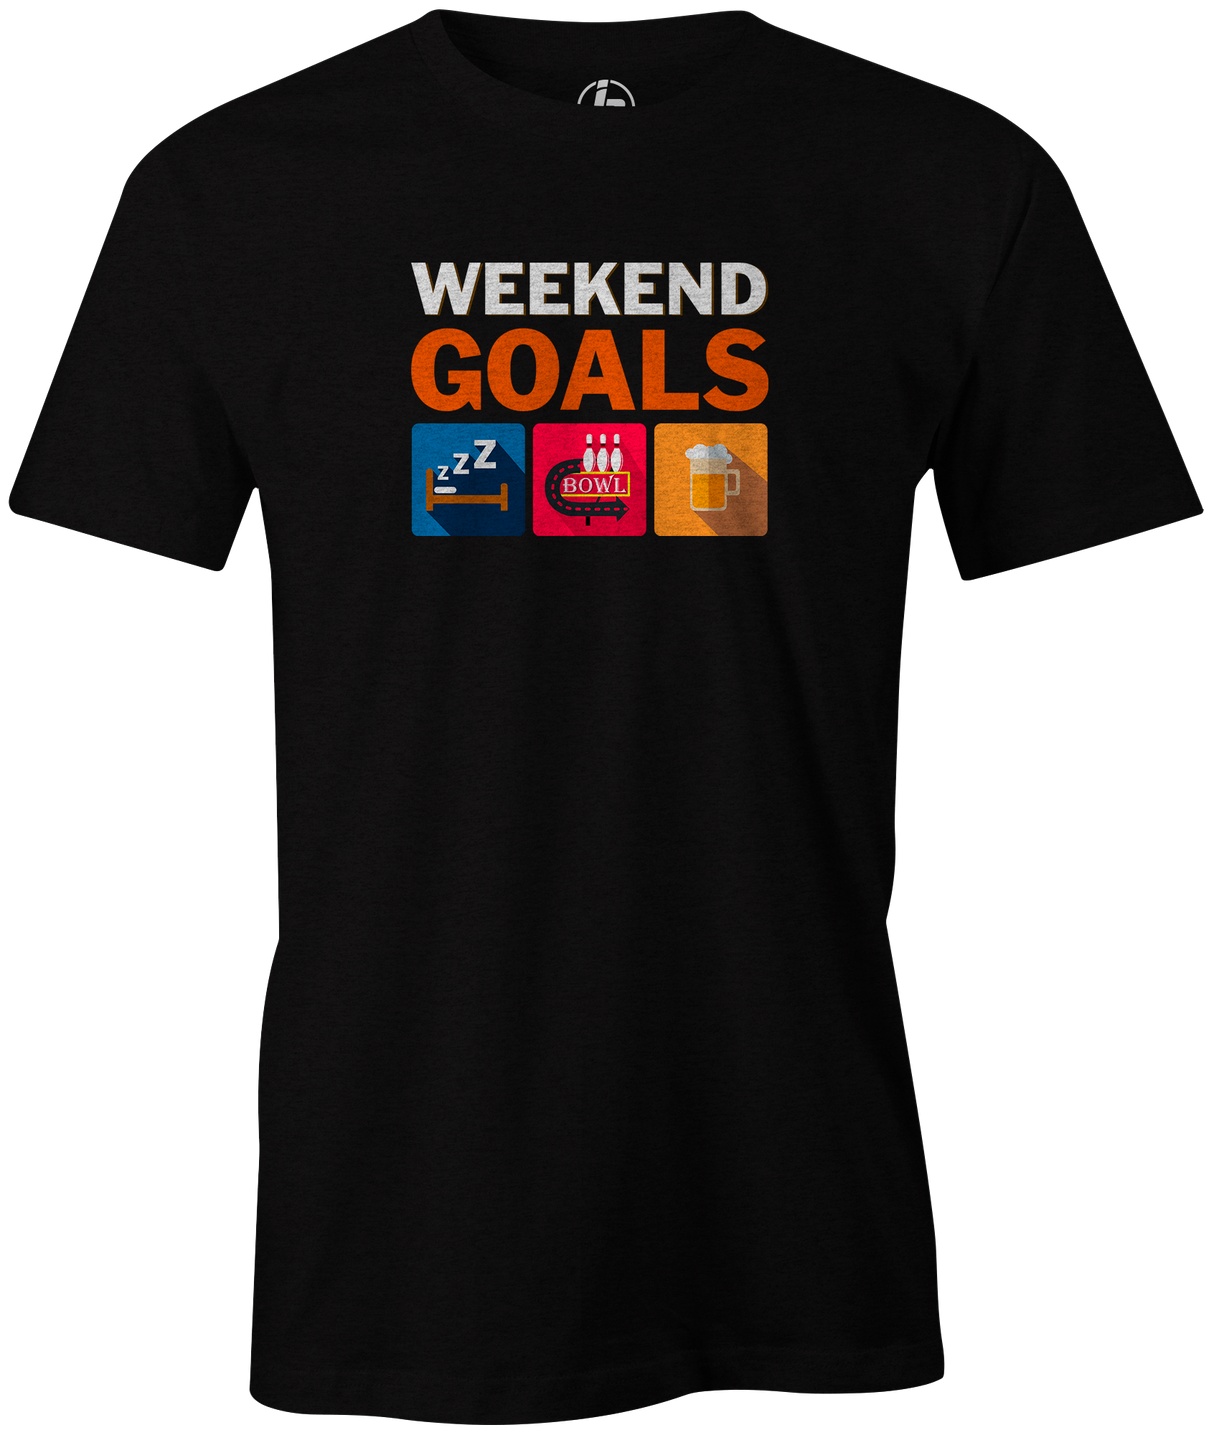 Weekend Goals Men's T-shirt, Charcoal, Bowling, tshirt, tee, tee-shirt, tee shirt